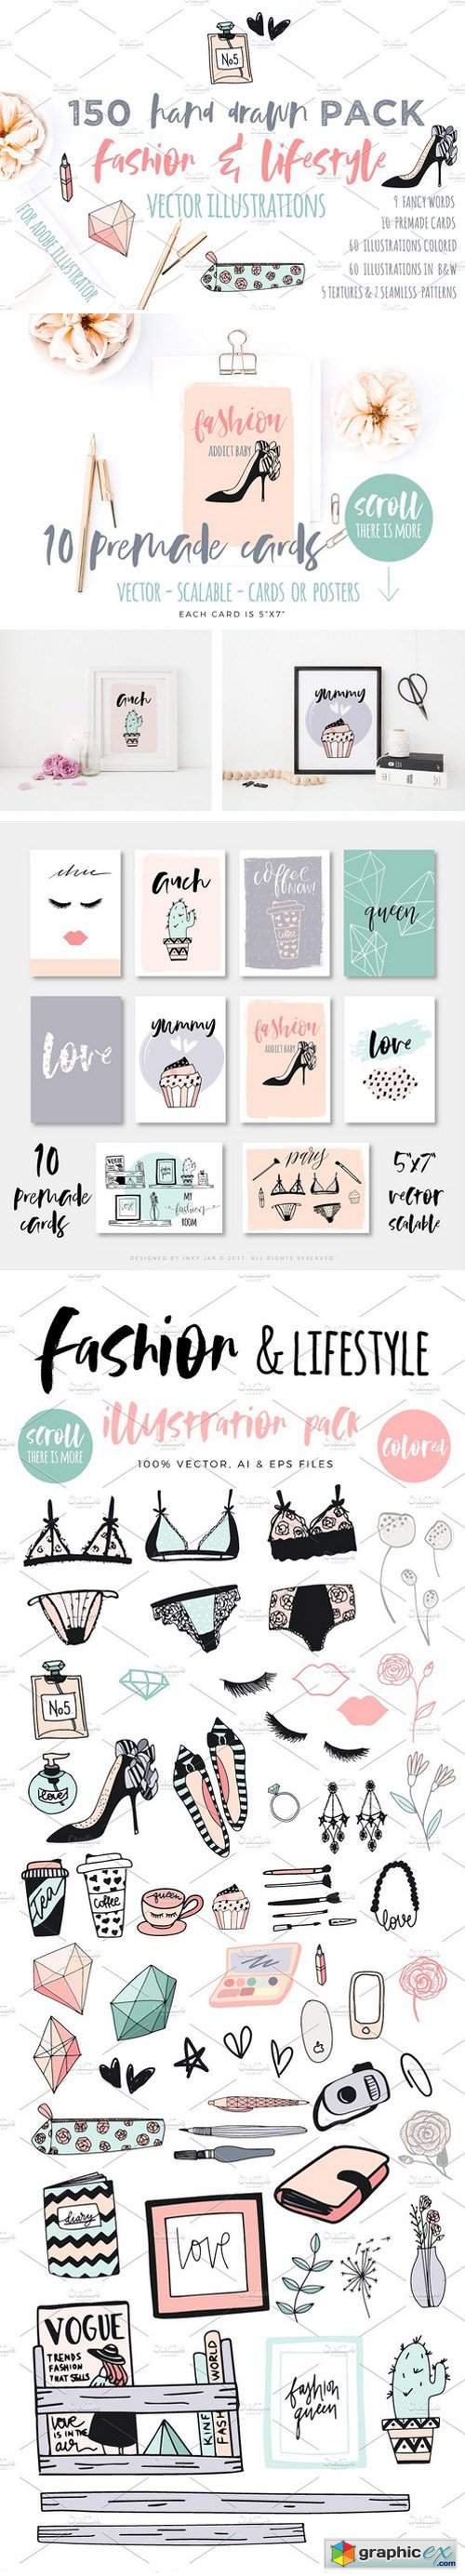 Fashion/Lifestyle illustration pack